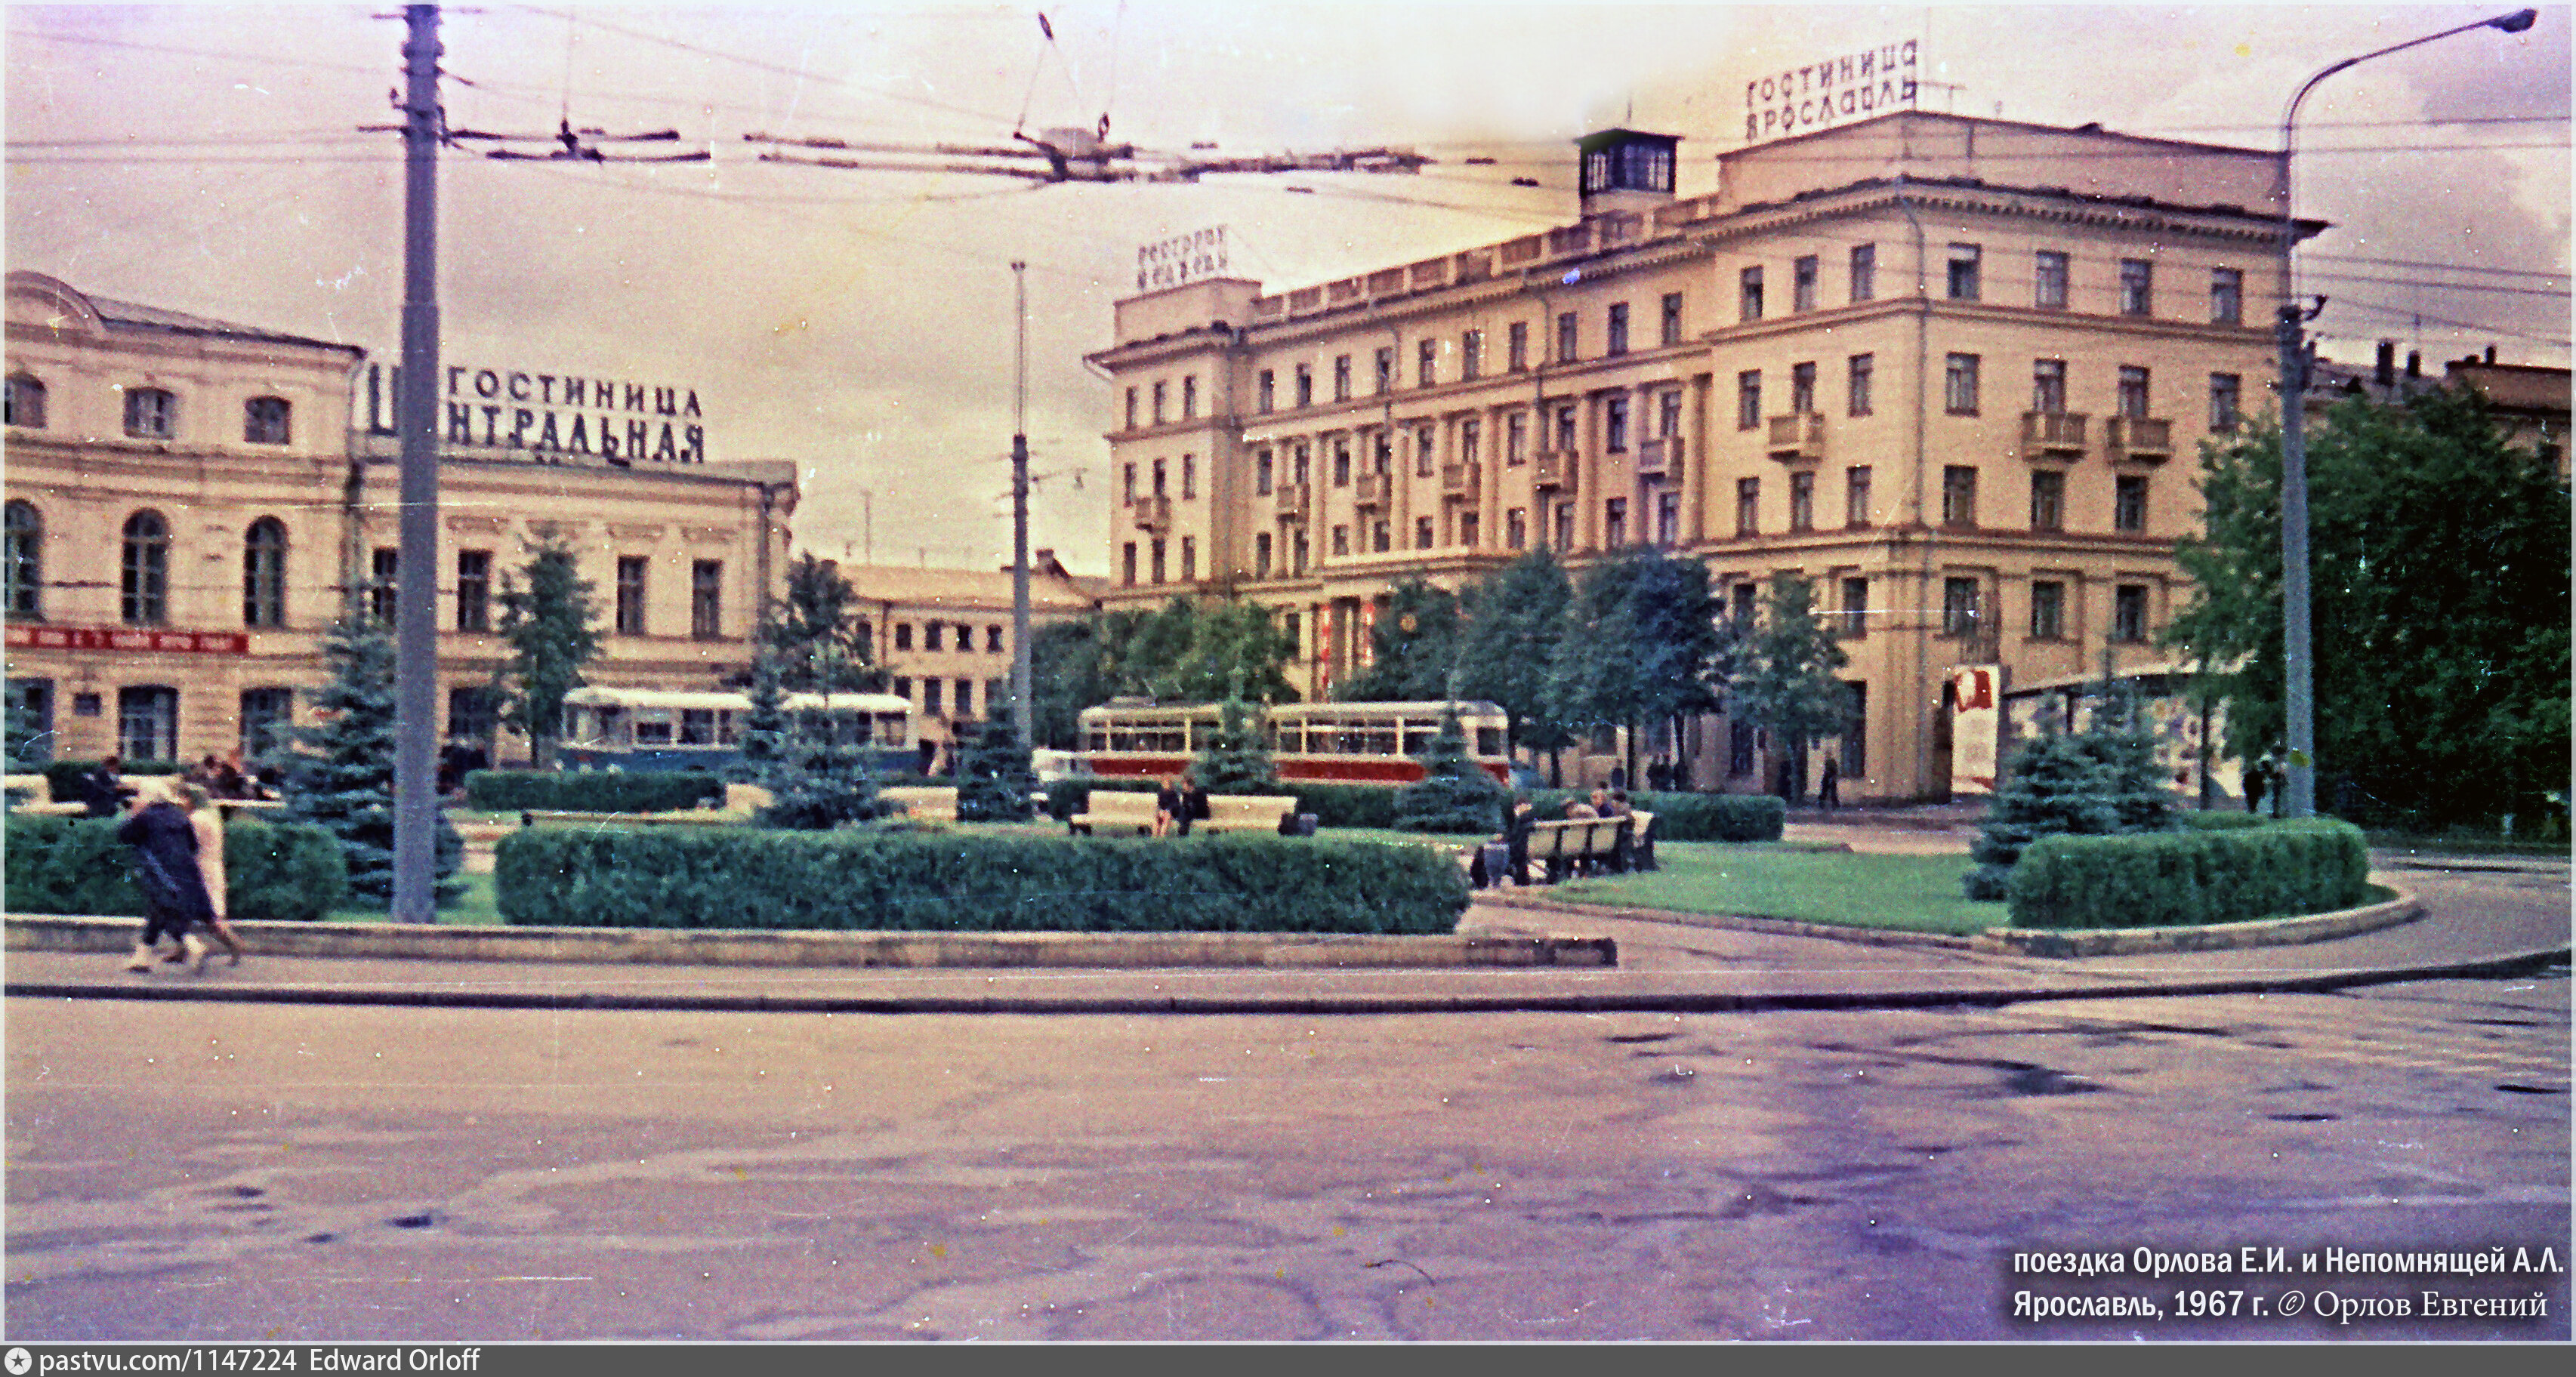 Гостиница Ярославль в СССР